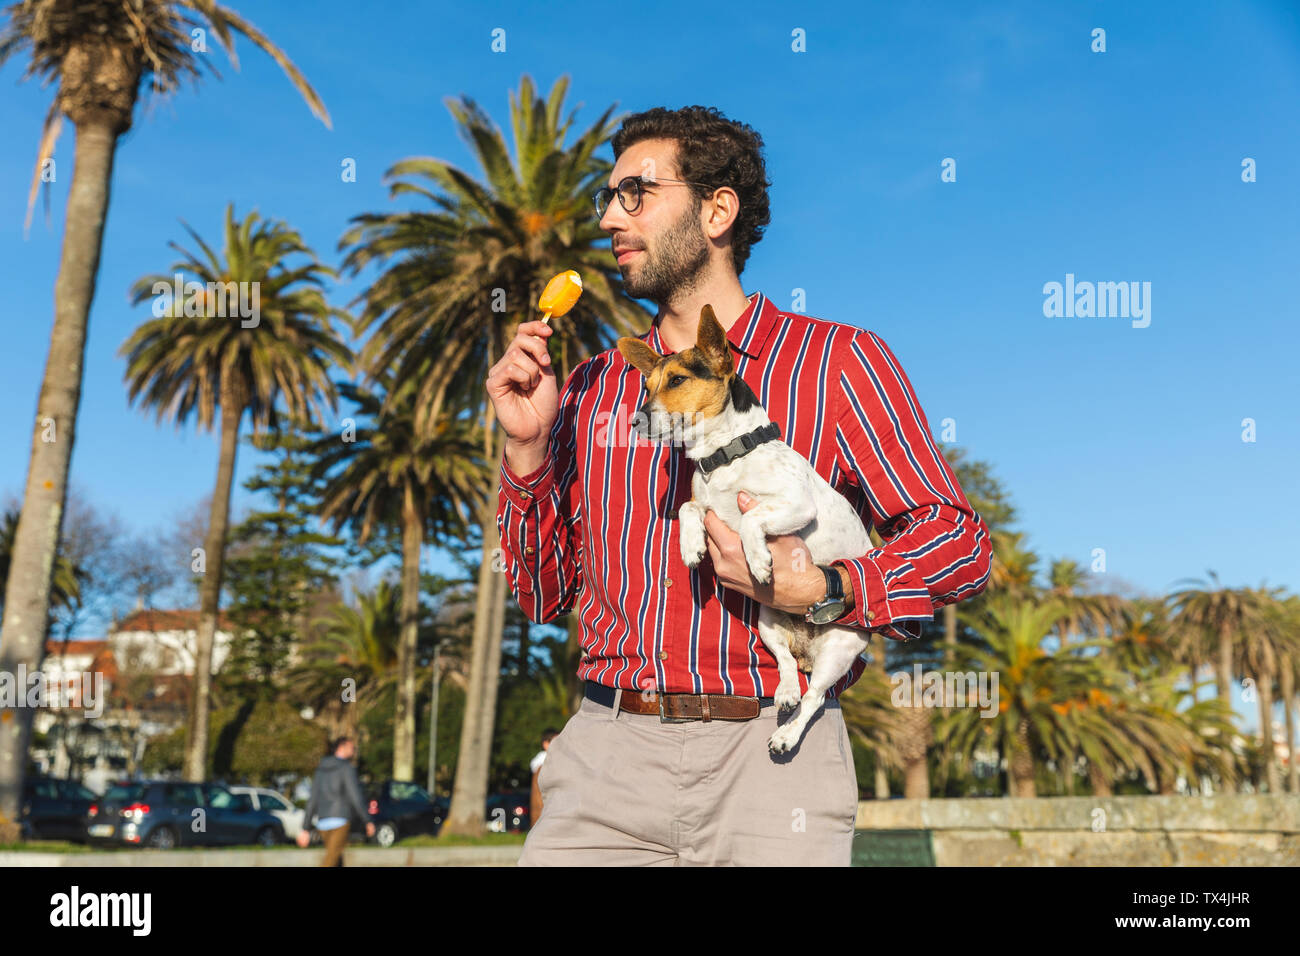 Jeune homme avec chien sur son bras eating ice lolly Banque D'Images